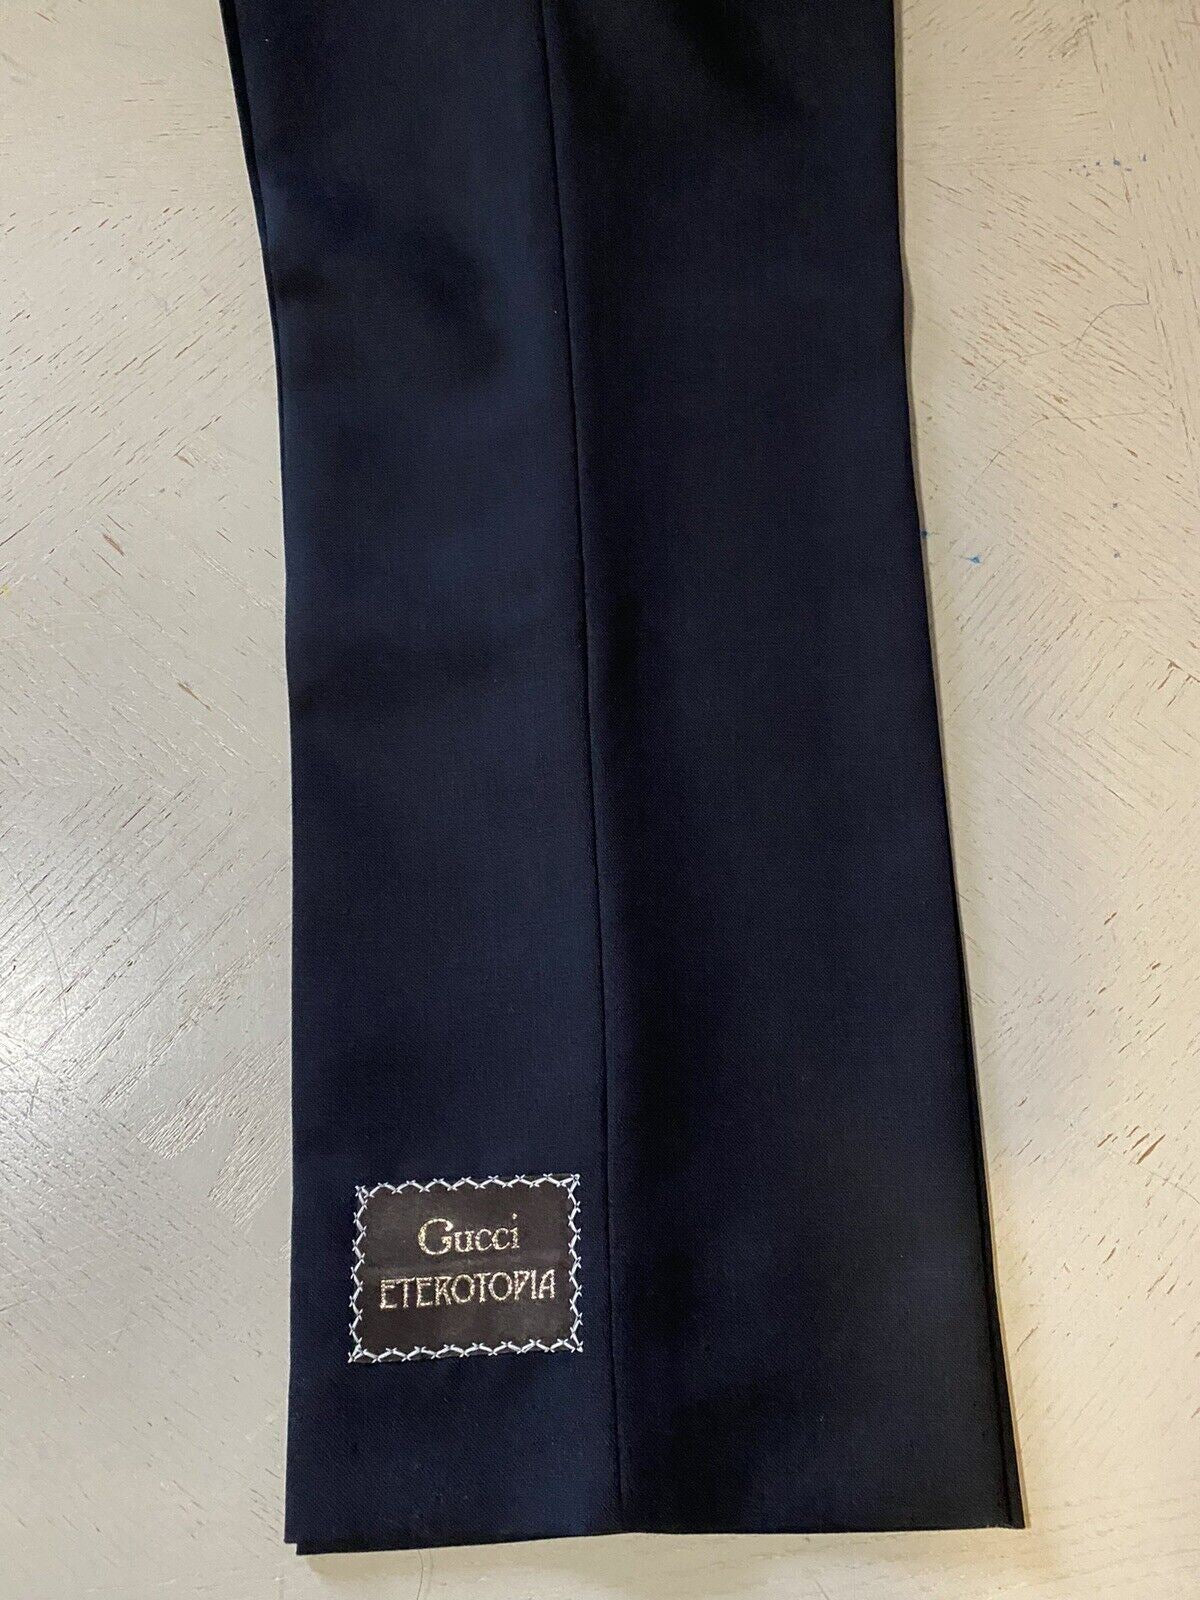 Мужские классические брюки Gucci из шерсти и мохера NWT, черные 38 долларов США (54 евро)